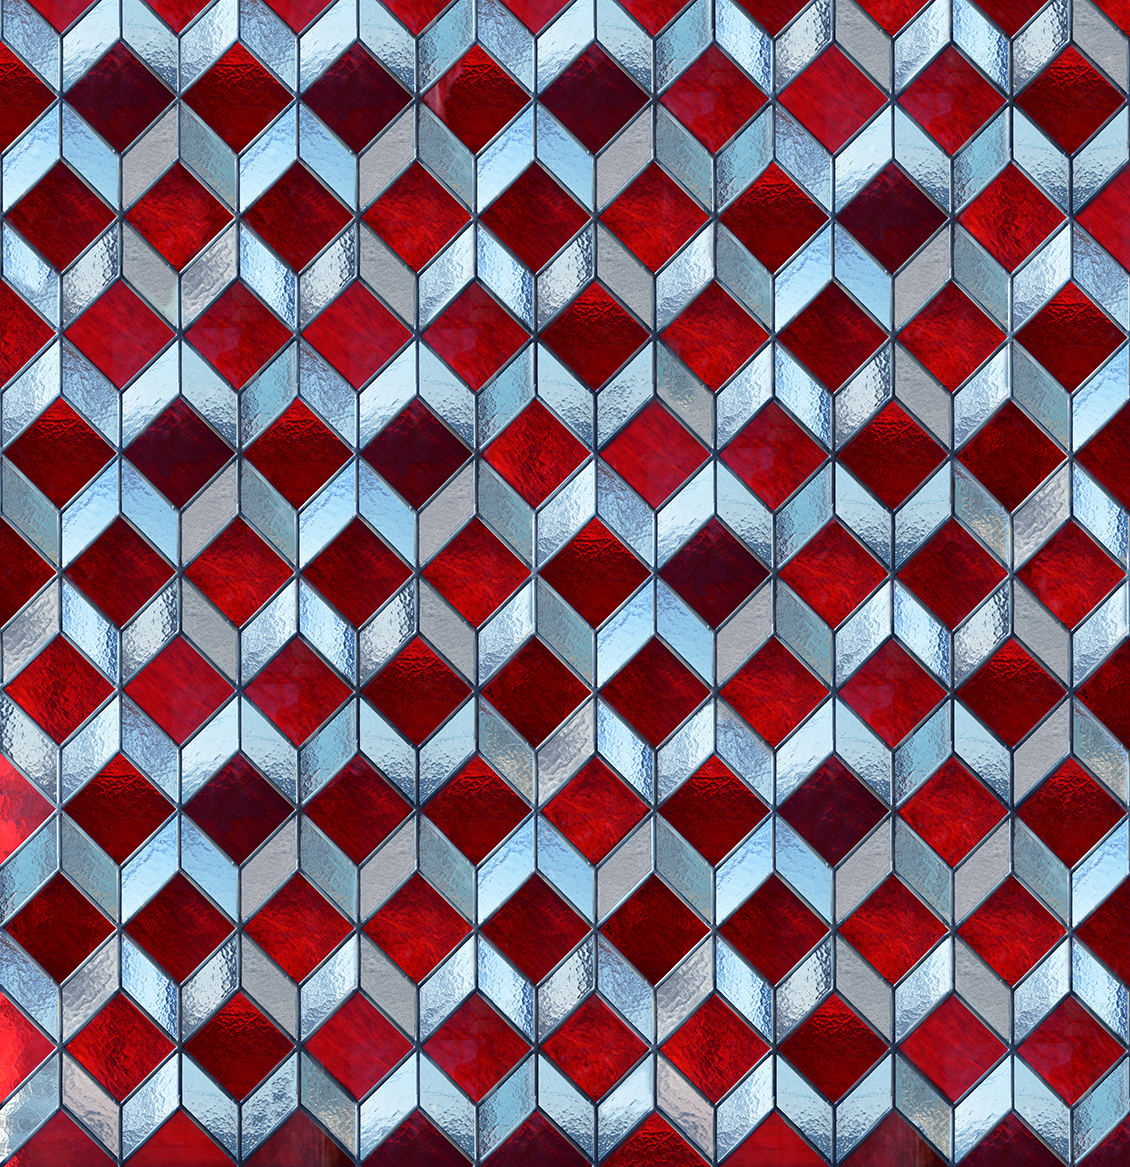 Carta da parati geometrica, con vetrata a rombi rossa e bianca, effetto realistico